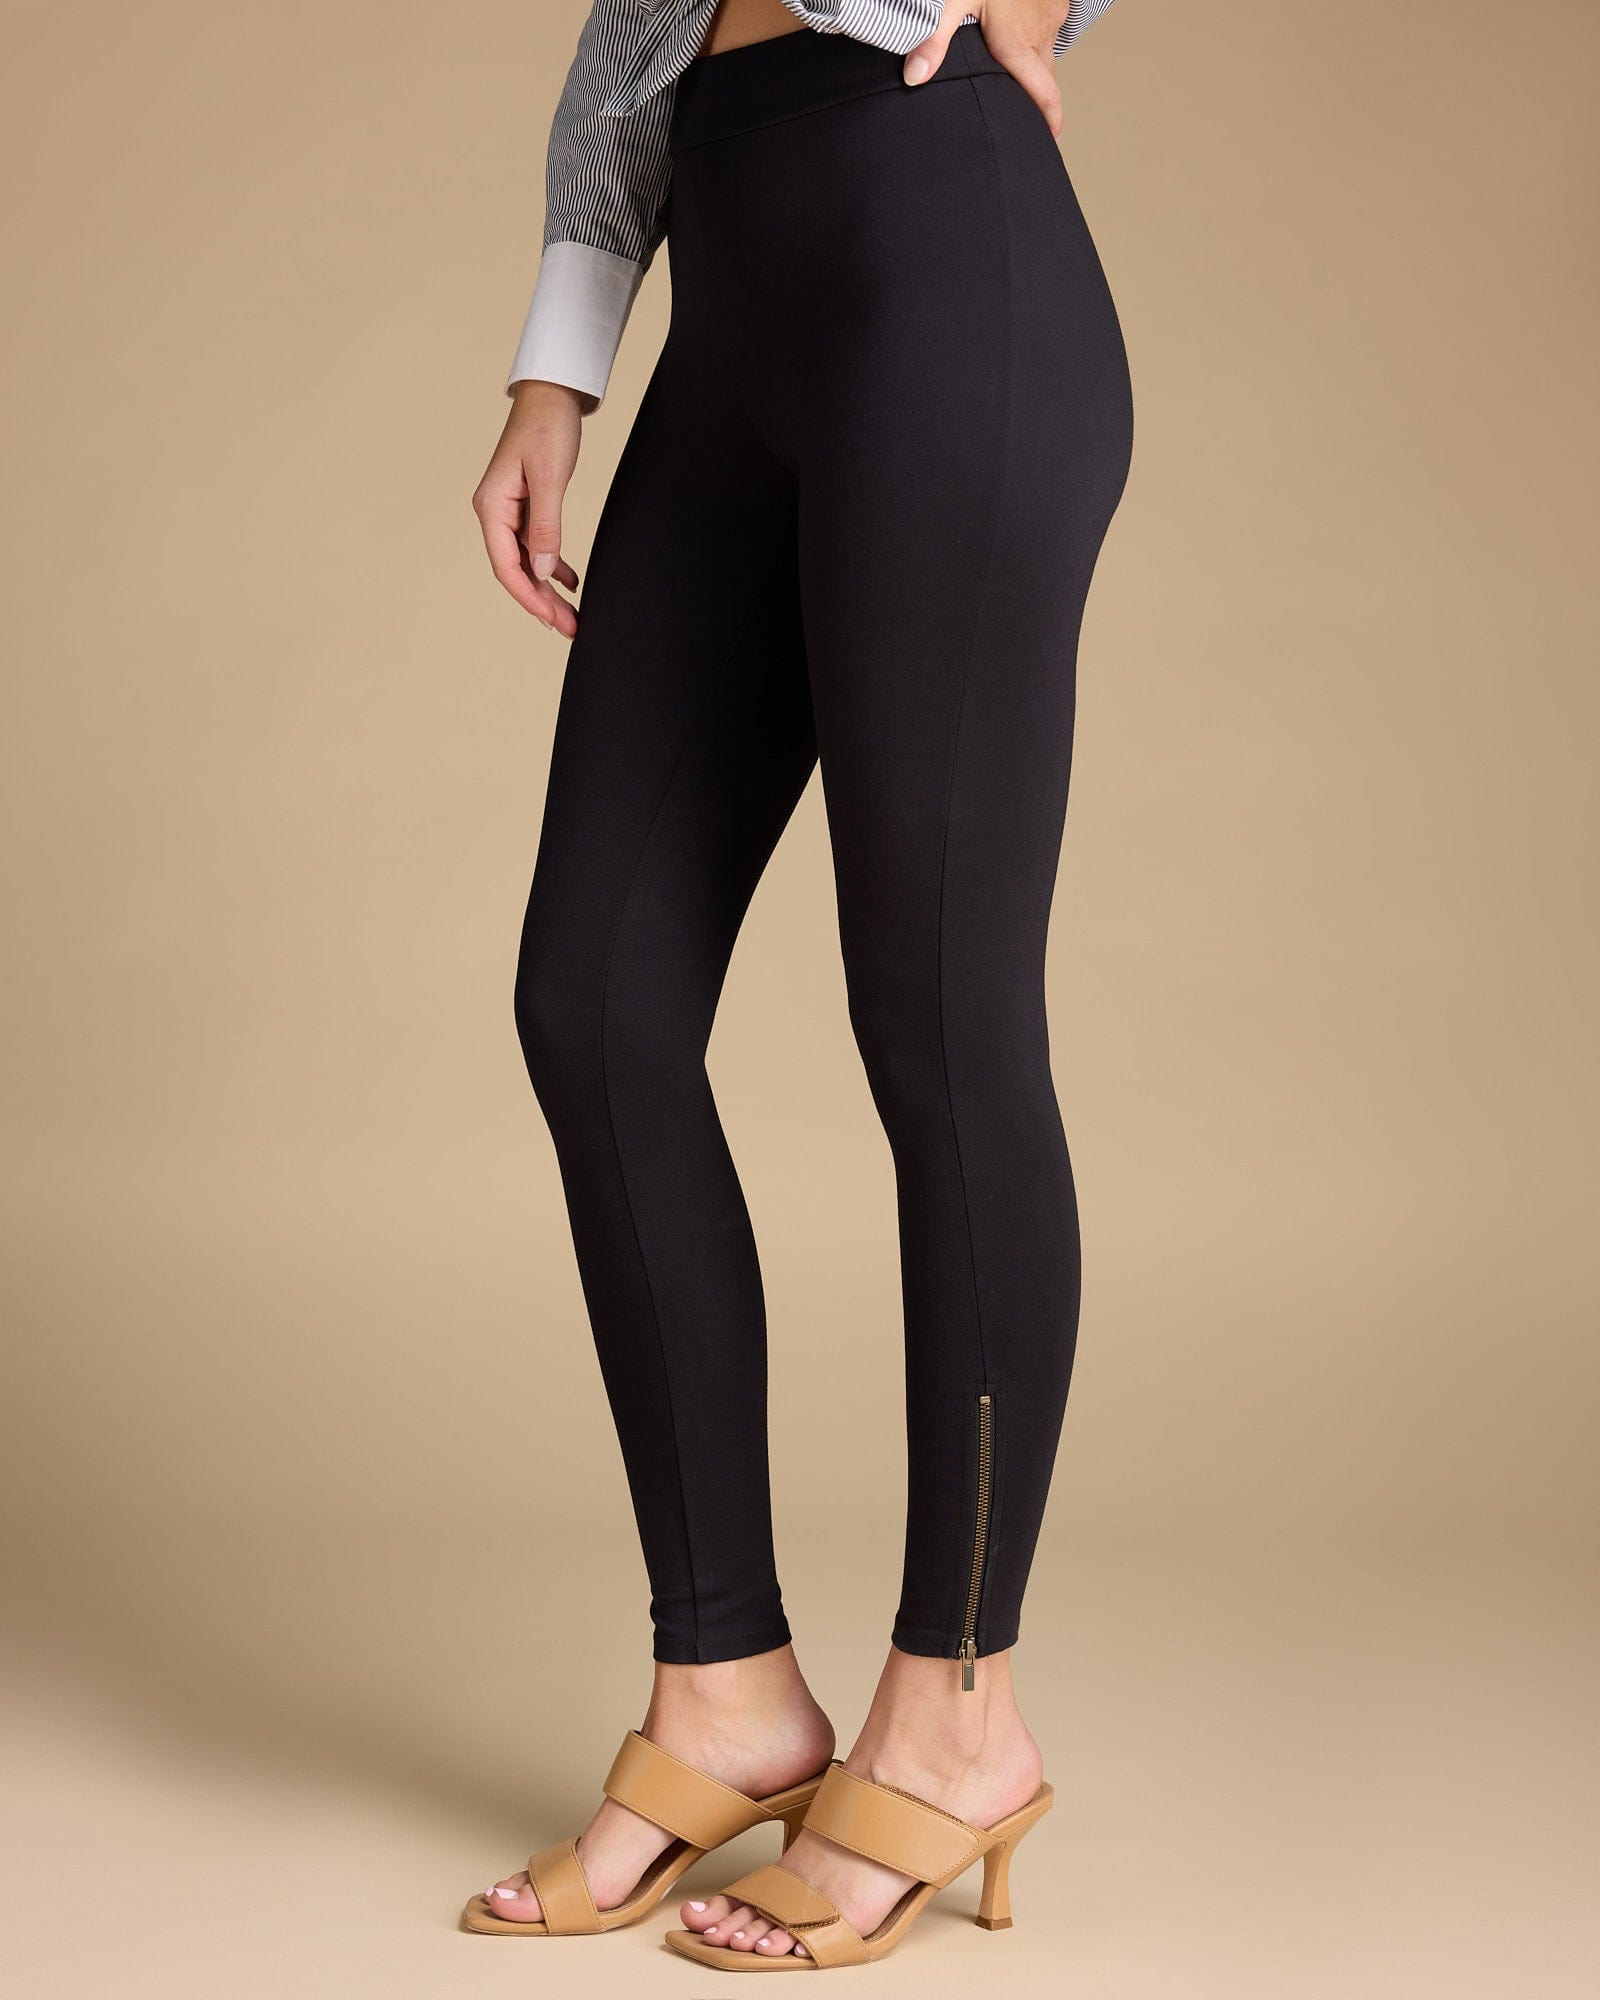 Woman in black solid leggings